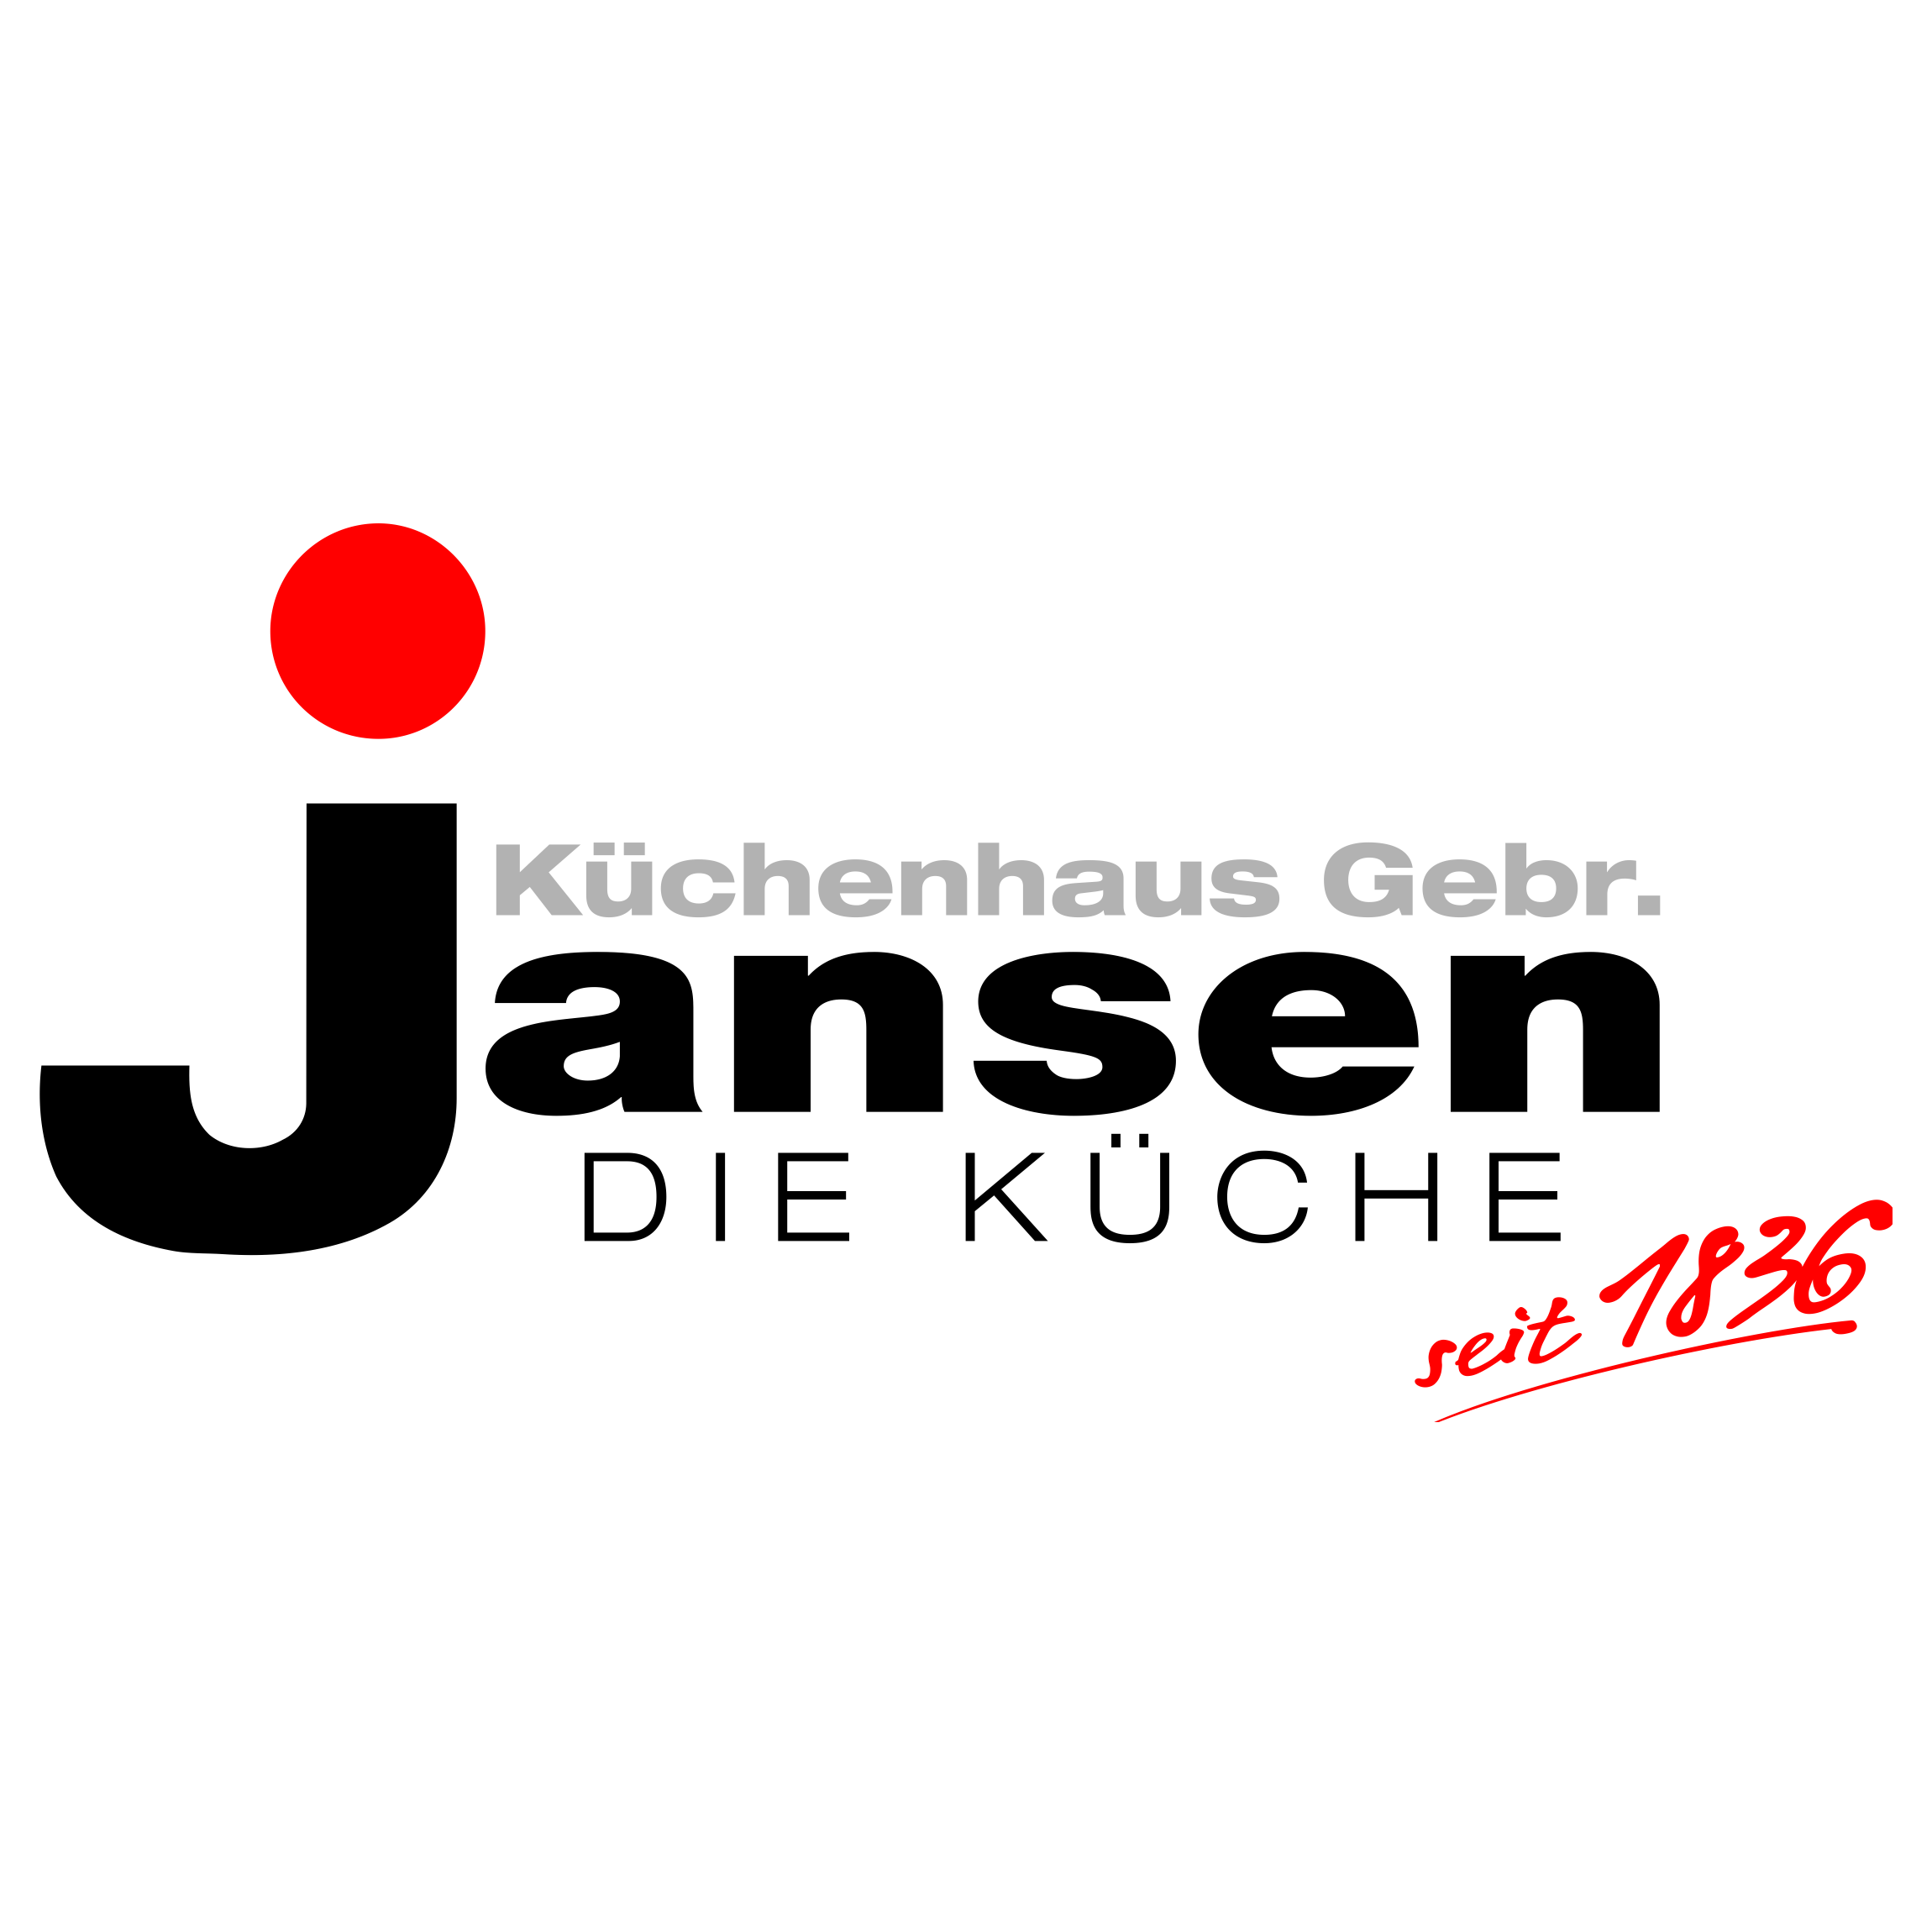 Küchenhaus Gebr. Jansen in Günhoven Stadt Mönchengladbach - Logo